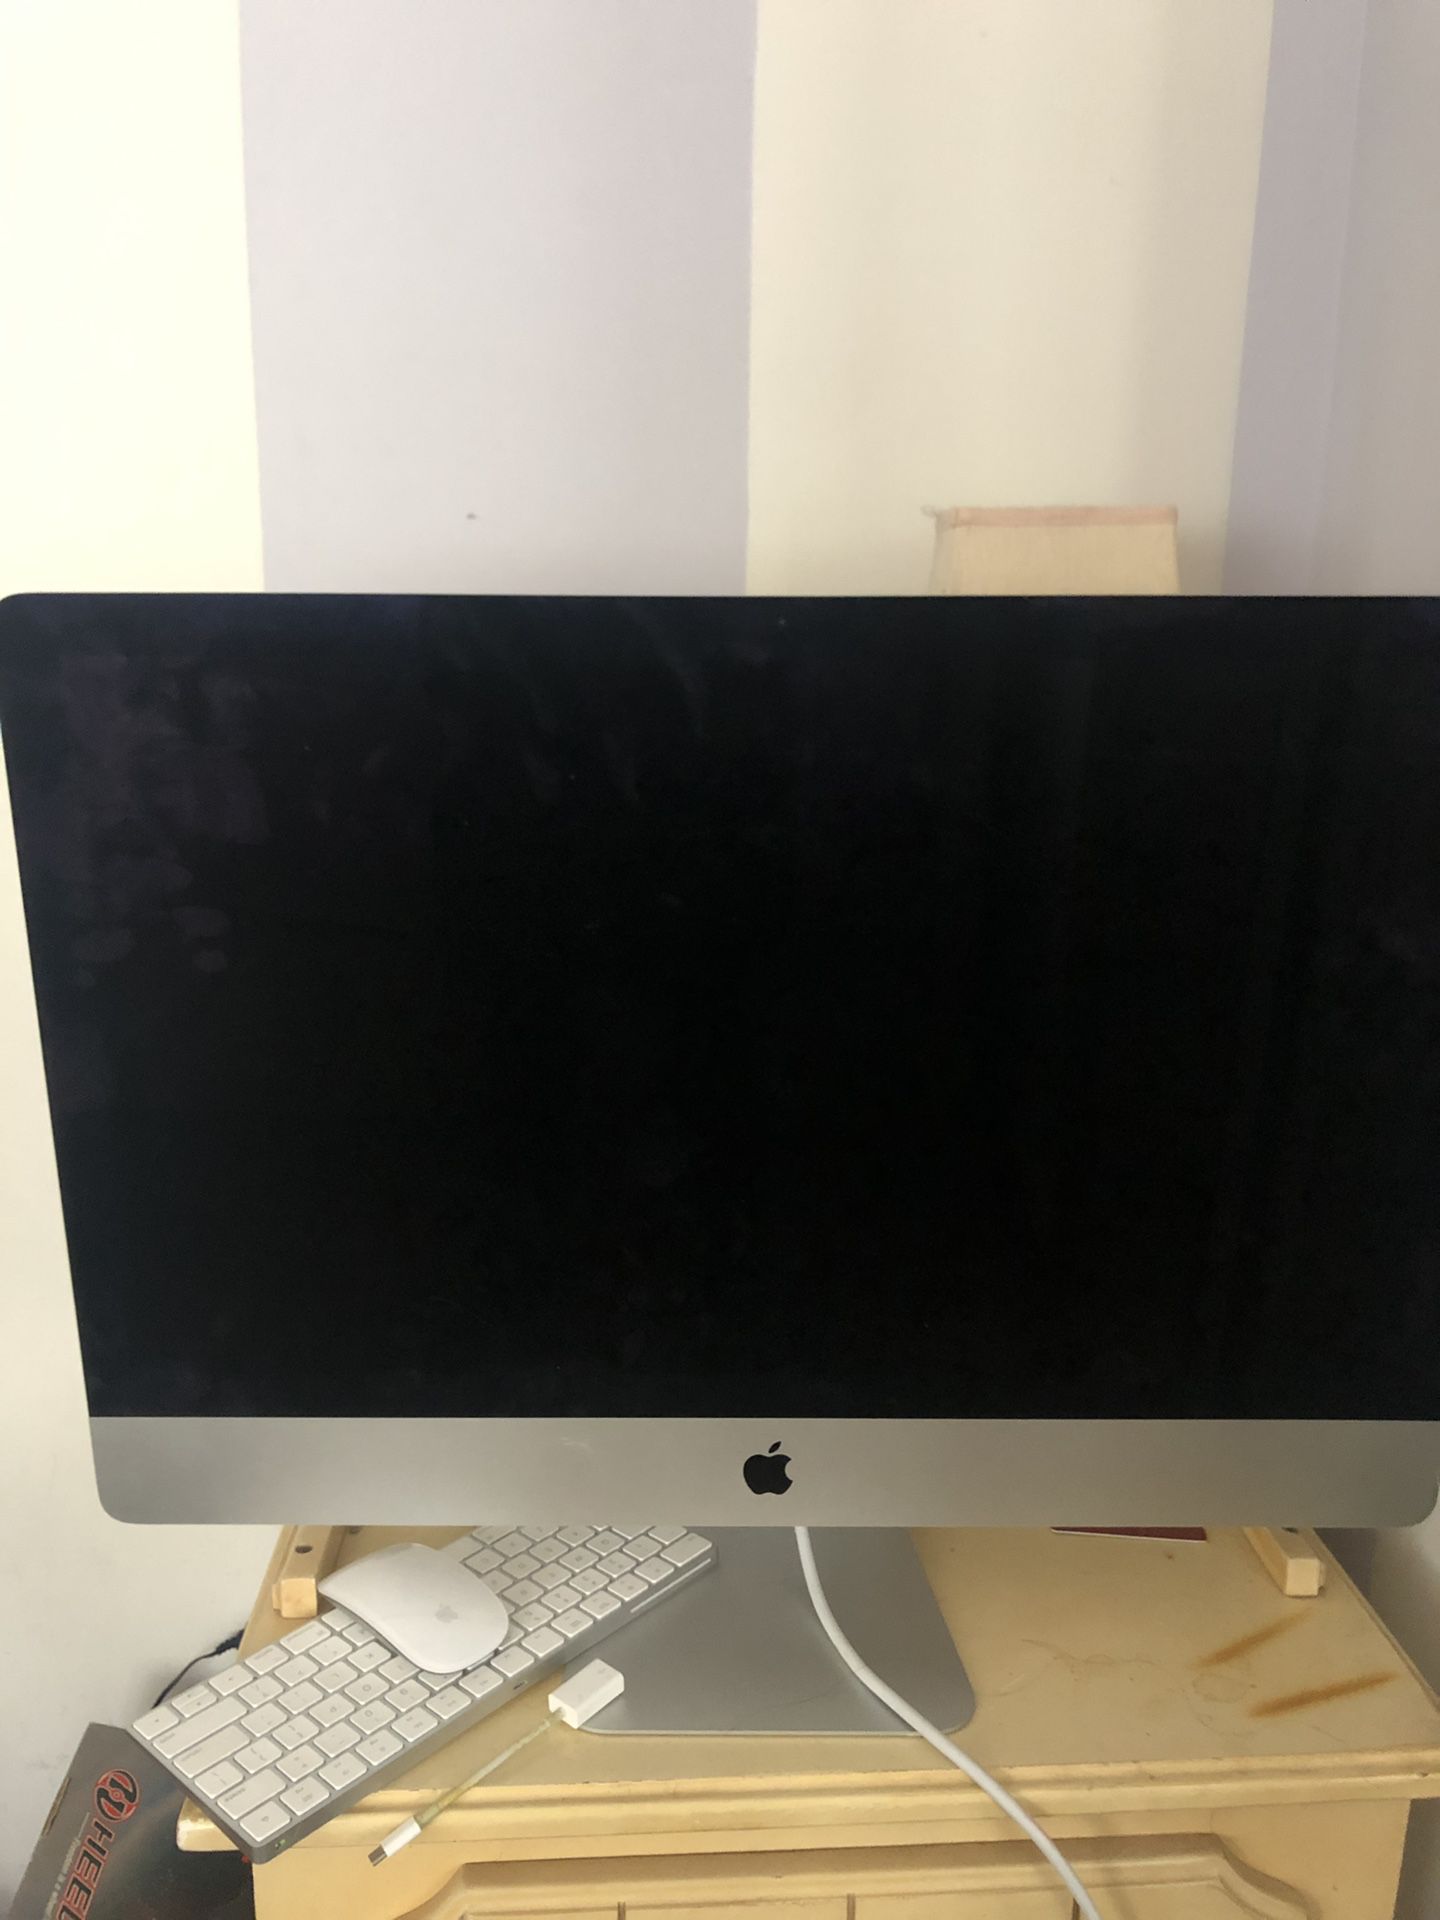 Apple I Mac 27inch 5k Retina (brand new)